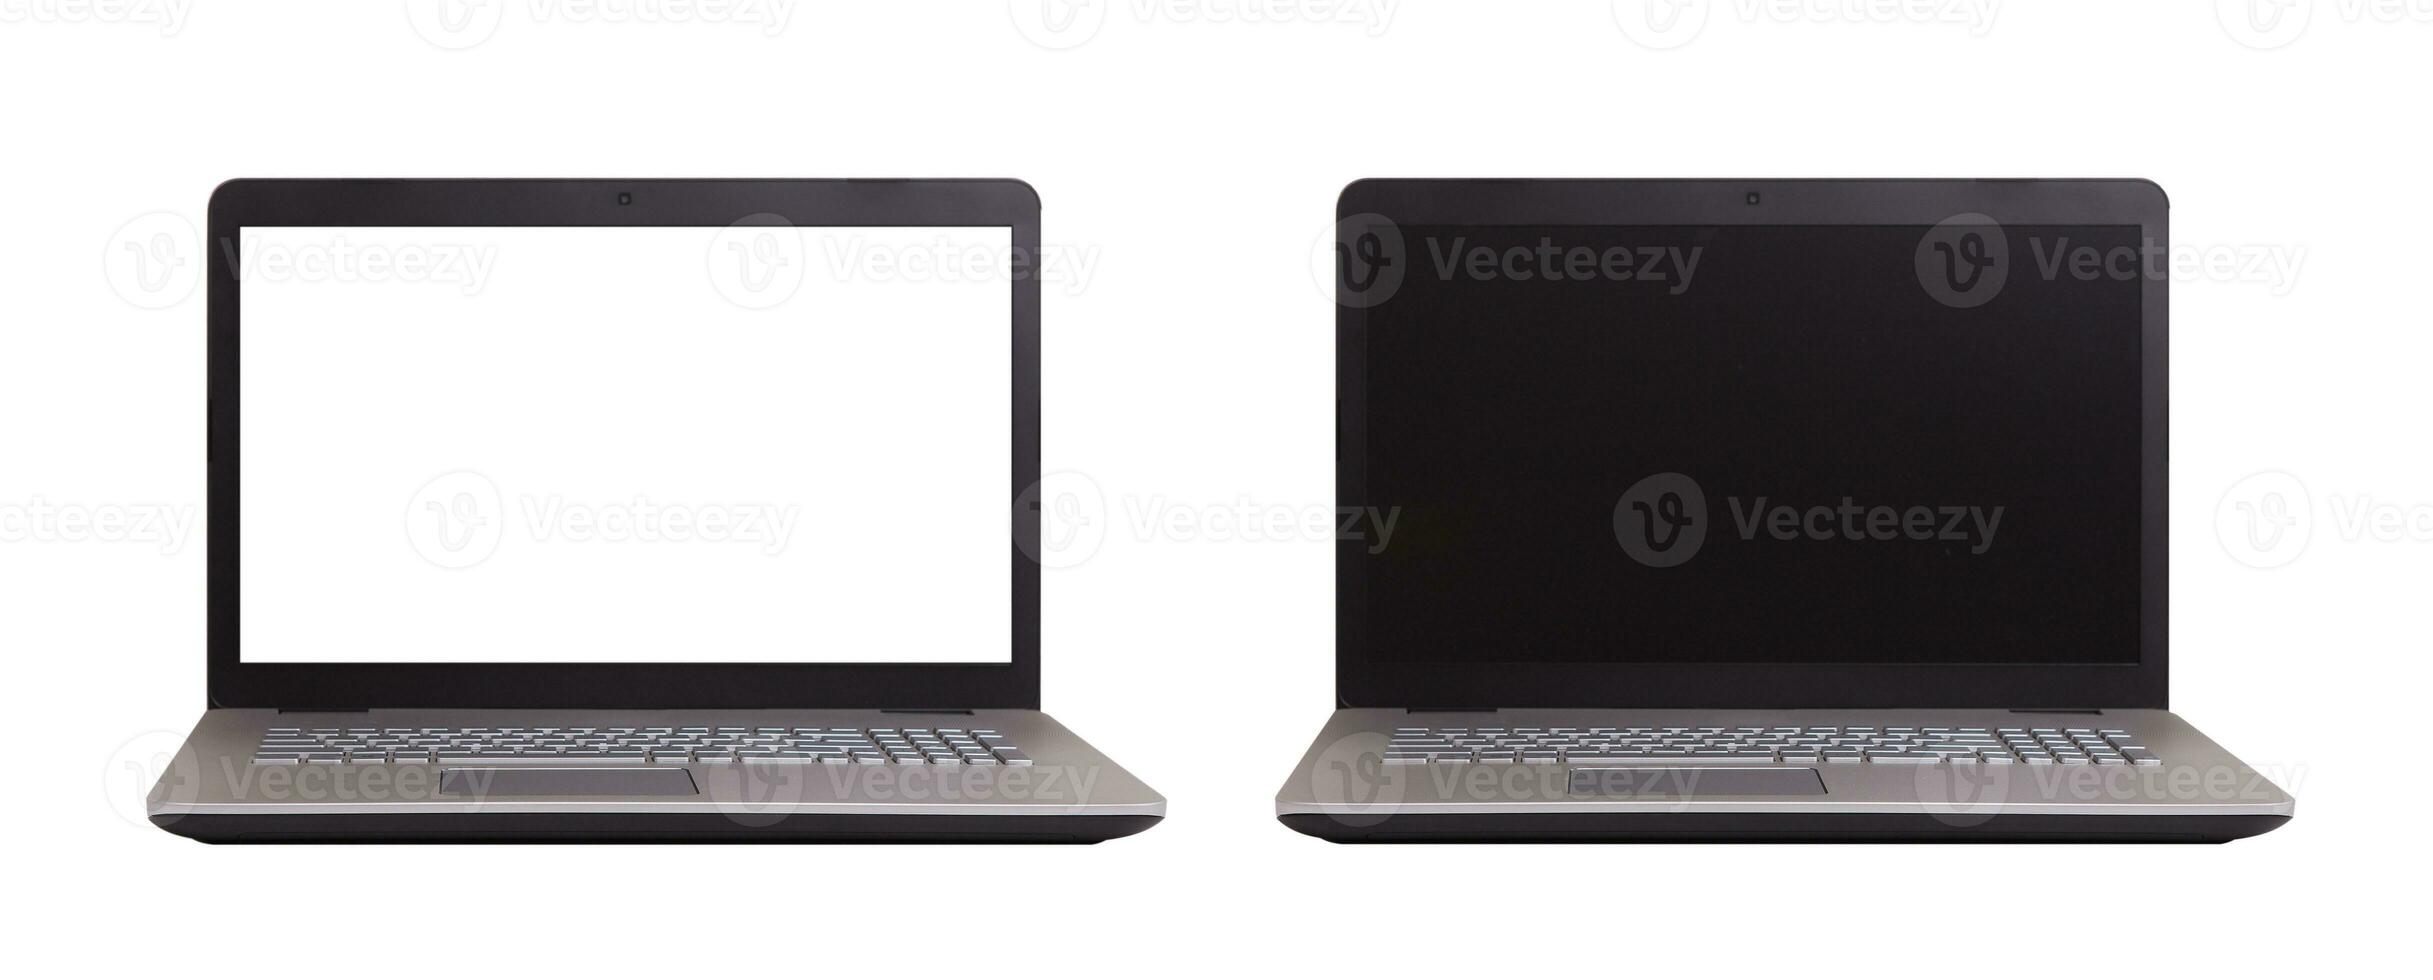 bärbar dator tom skärm på vit bakgrund, mockup, mall för din text, klippning banor inkluderad för bakgrund och enhet skärm svart och vit. uppsättning foto